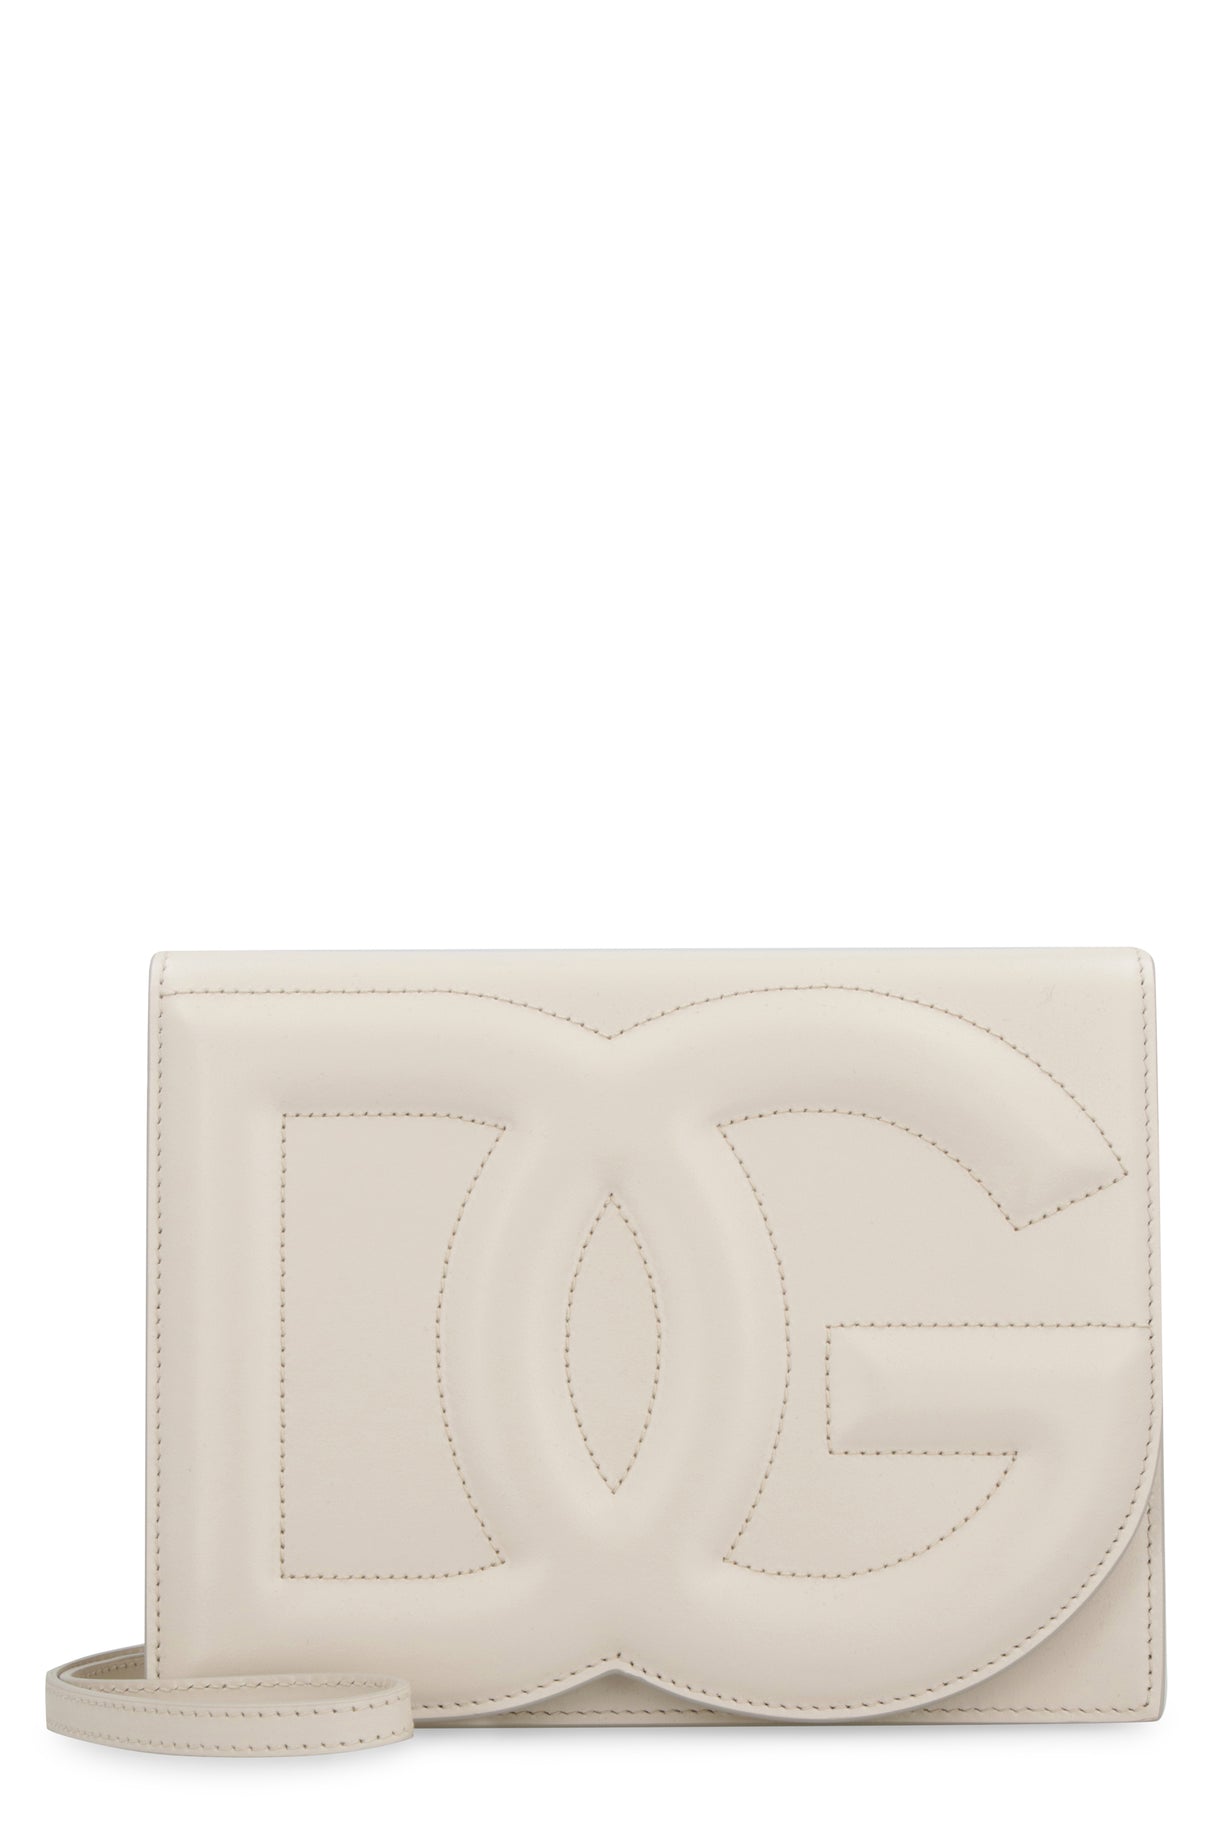 DOLCE & GABBANA Cream-Colored Calfskin Handbag with Embossed DG Logo for Women